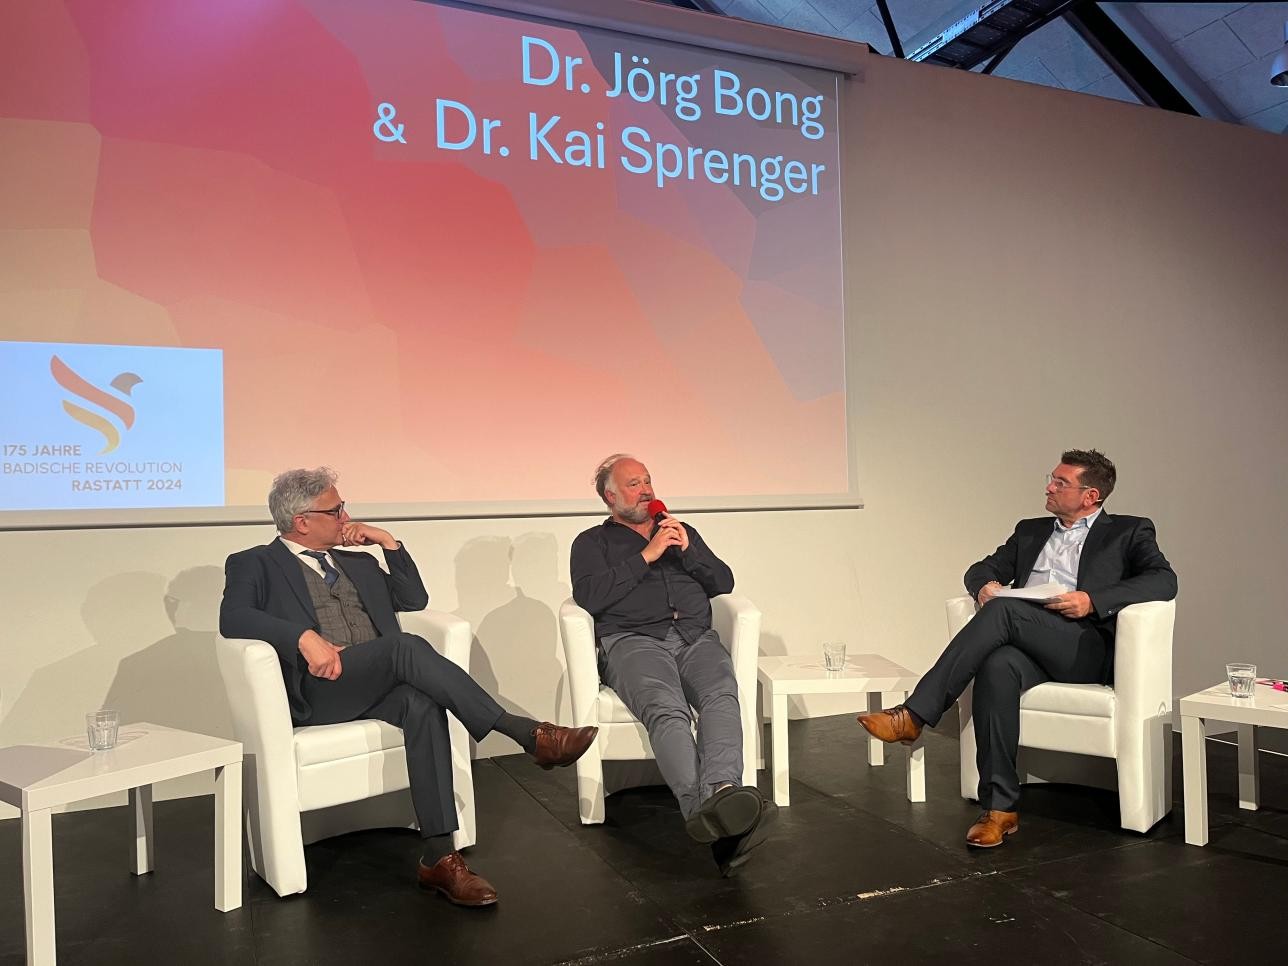 Dr. Kai Sprenger, Dr. Jörg Bong und Moderator Moderator Jochen Graf auf der Bühne in der Reithalle bei einer Diskussionsrunde